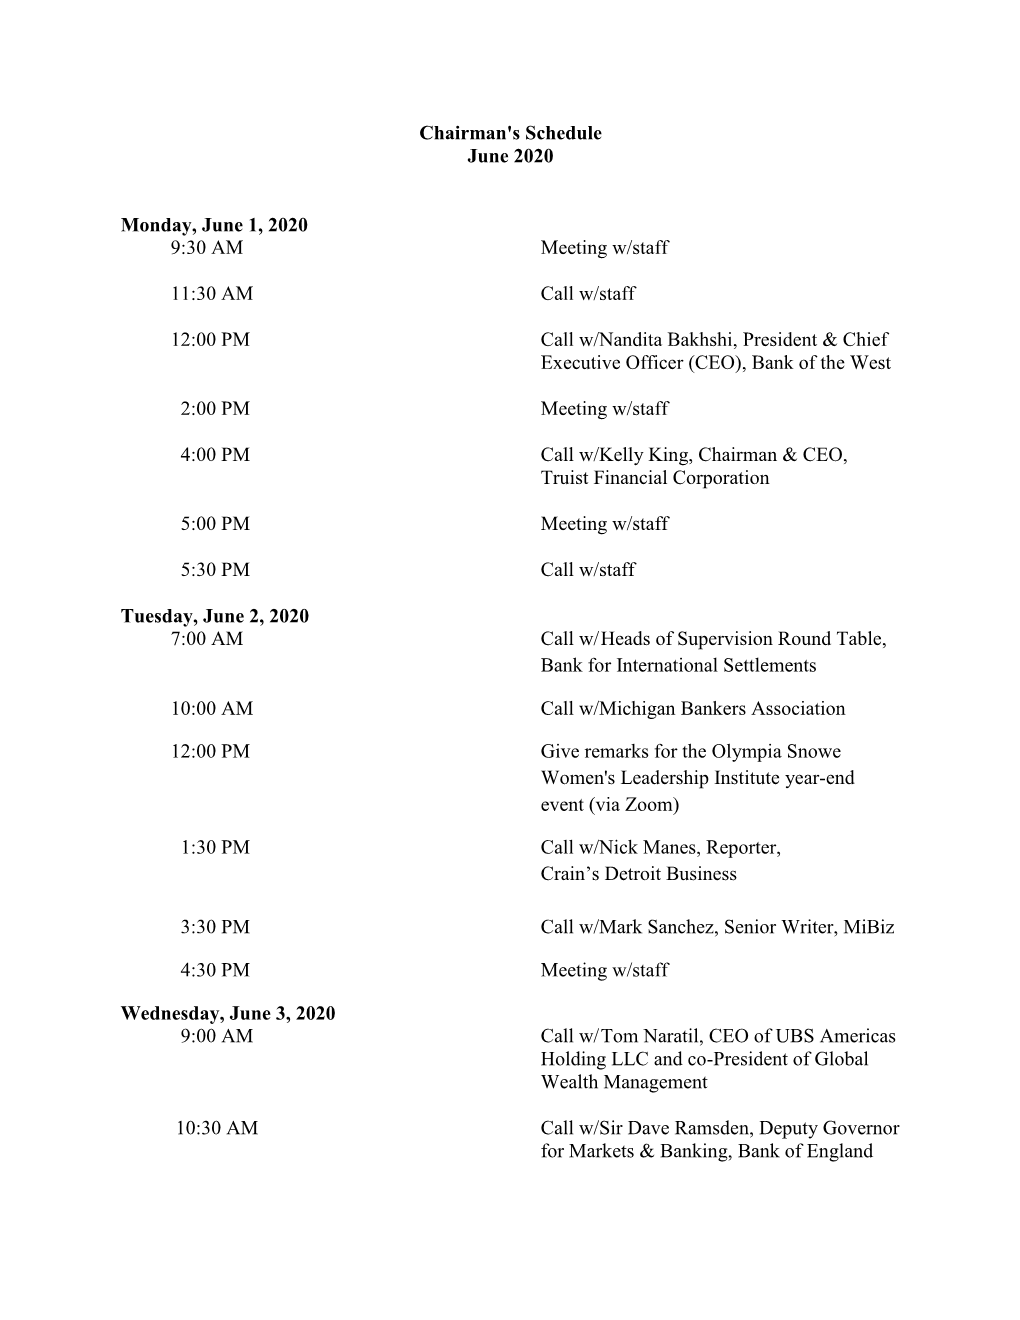 Chairman's Schedule June 2020